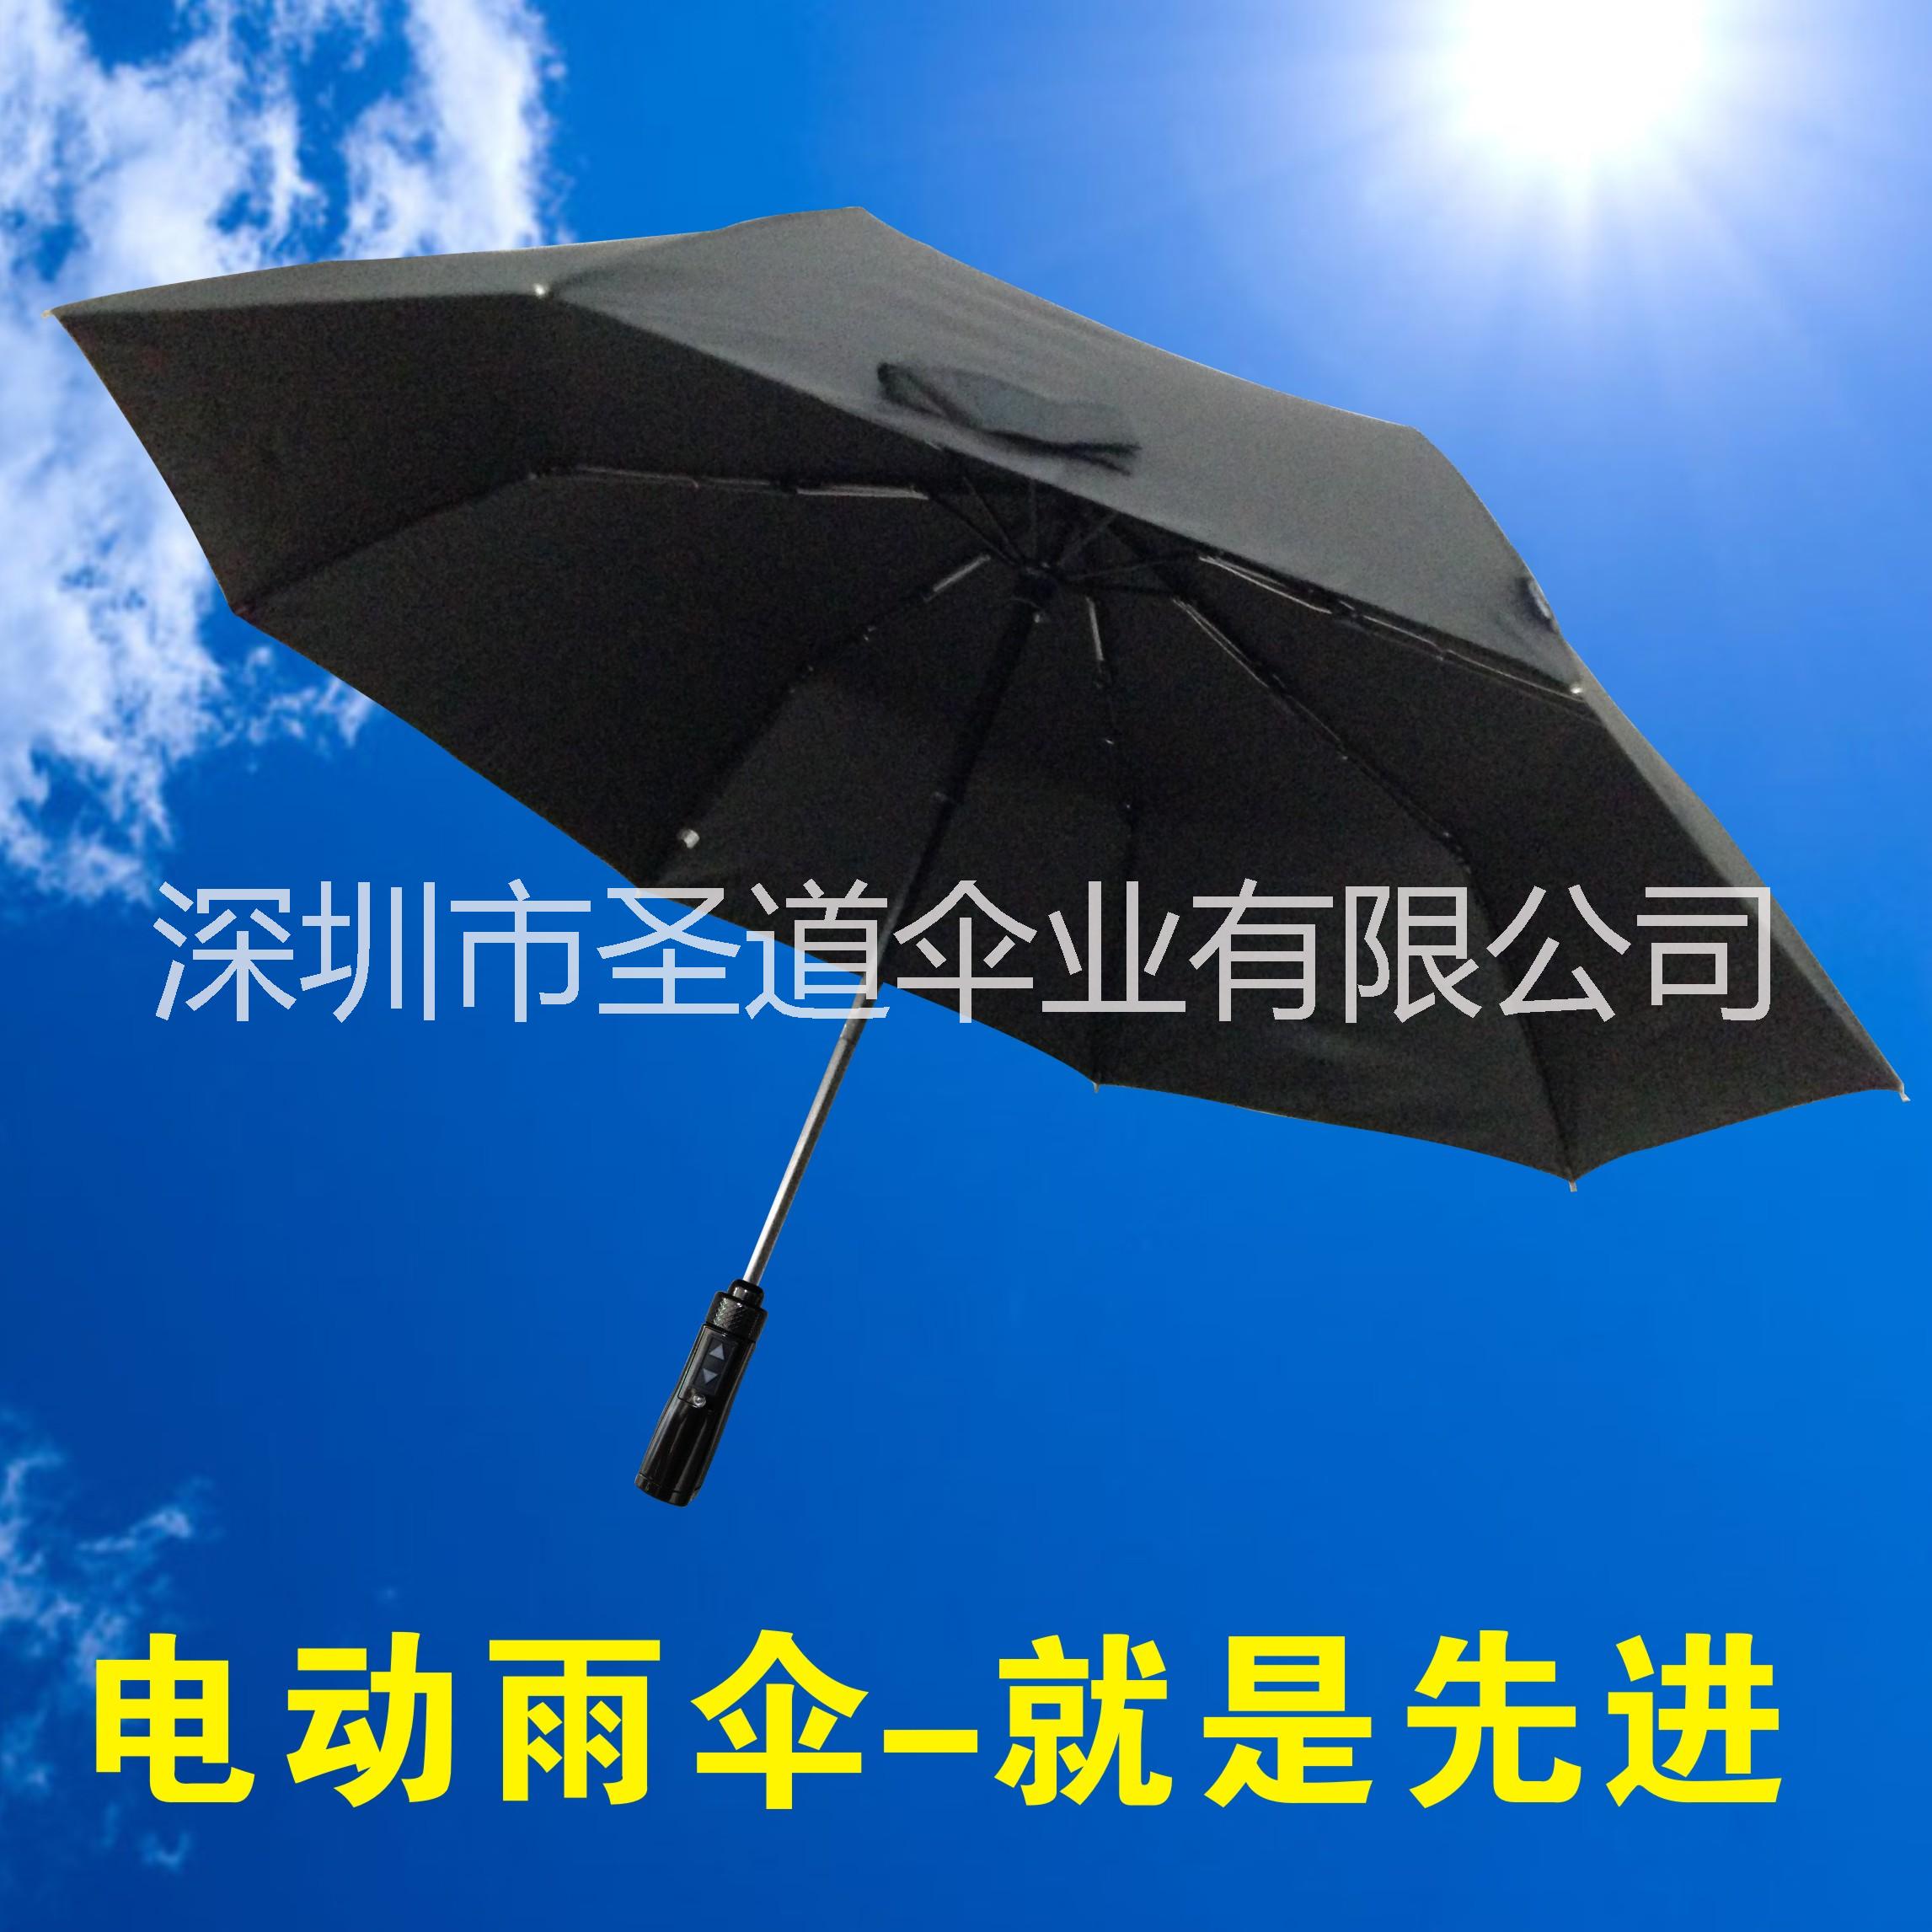 电动雨伞电动伞全自动可充电定做晴爽碰击布碳纤维全自动雨伞图片